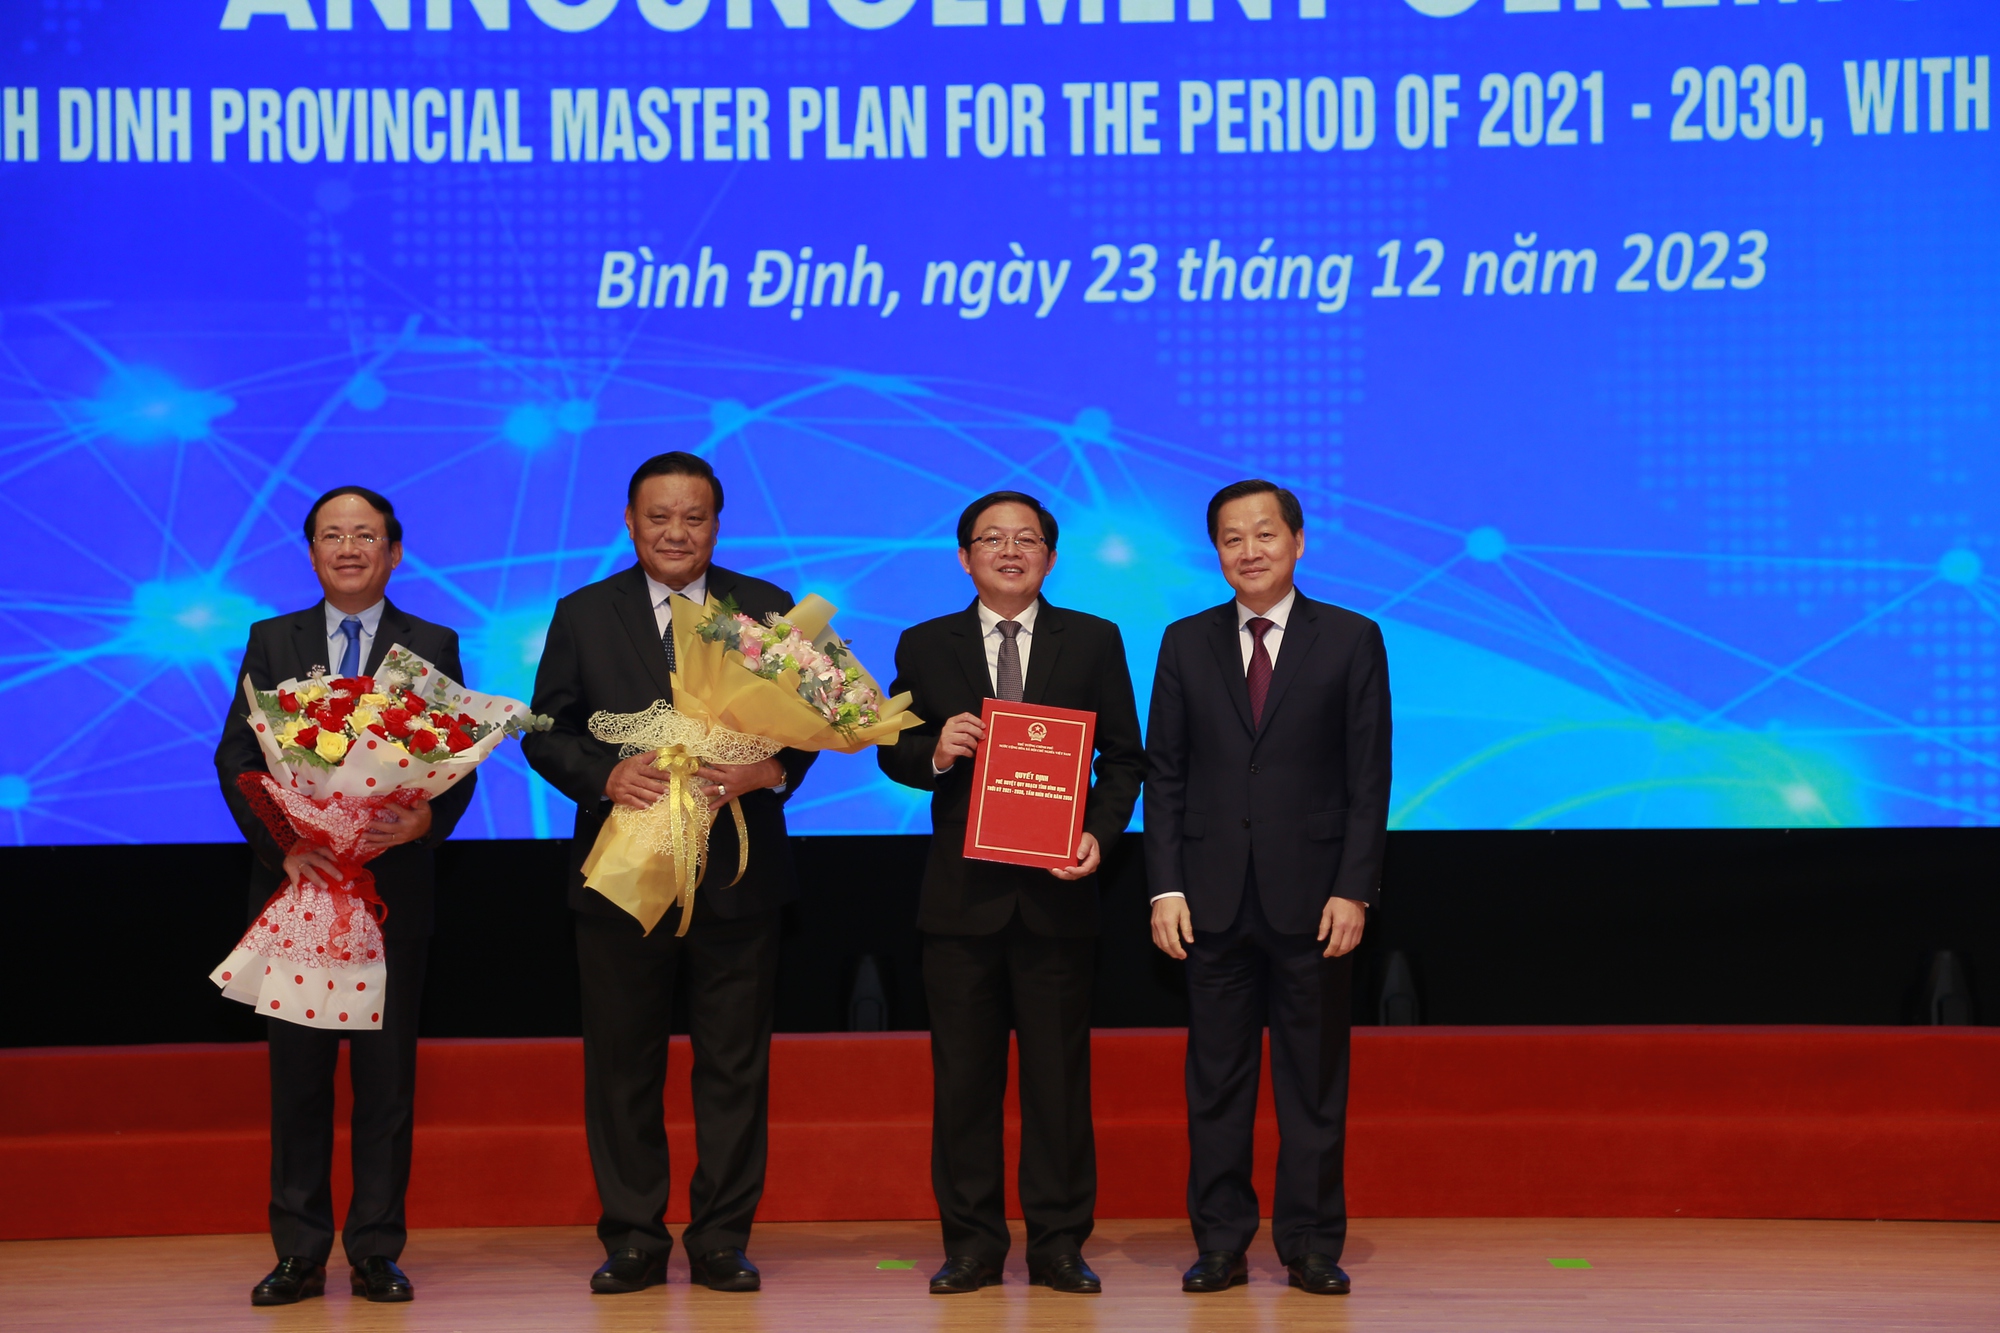 Phó thủ tướng: Bình Định cần ưu tiên đầu tư kết cấu hạ tầng giao thông kết nối khu vực - Ảnh 2.